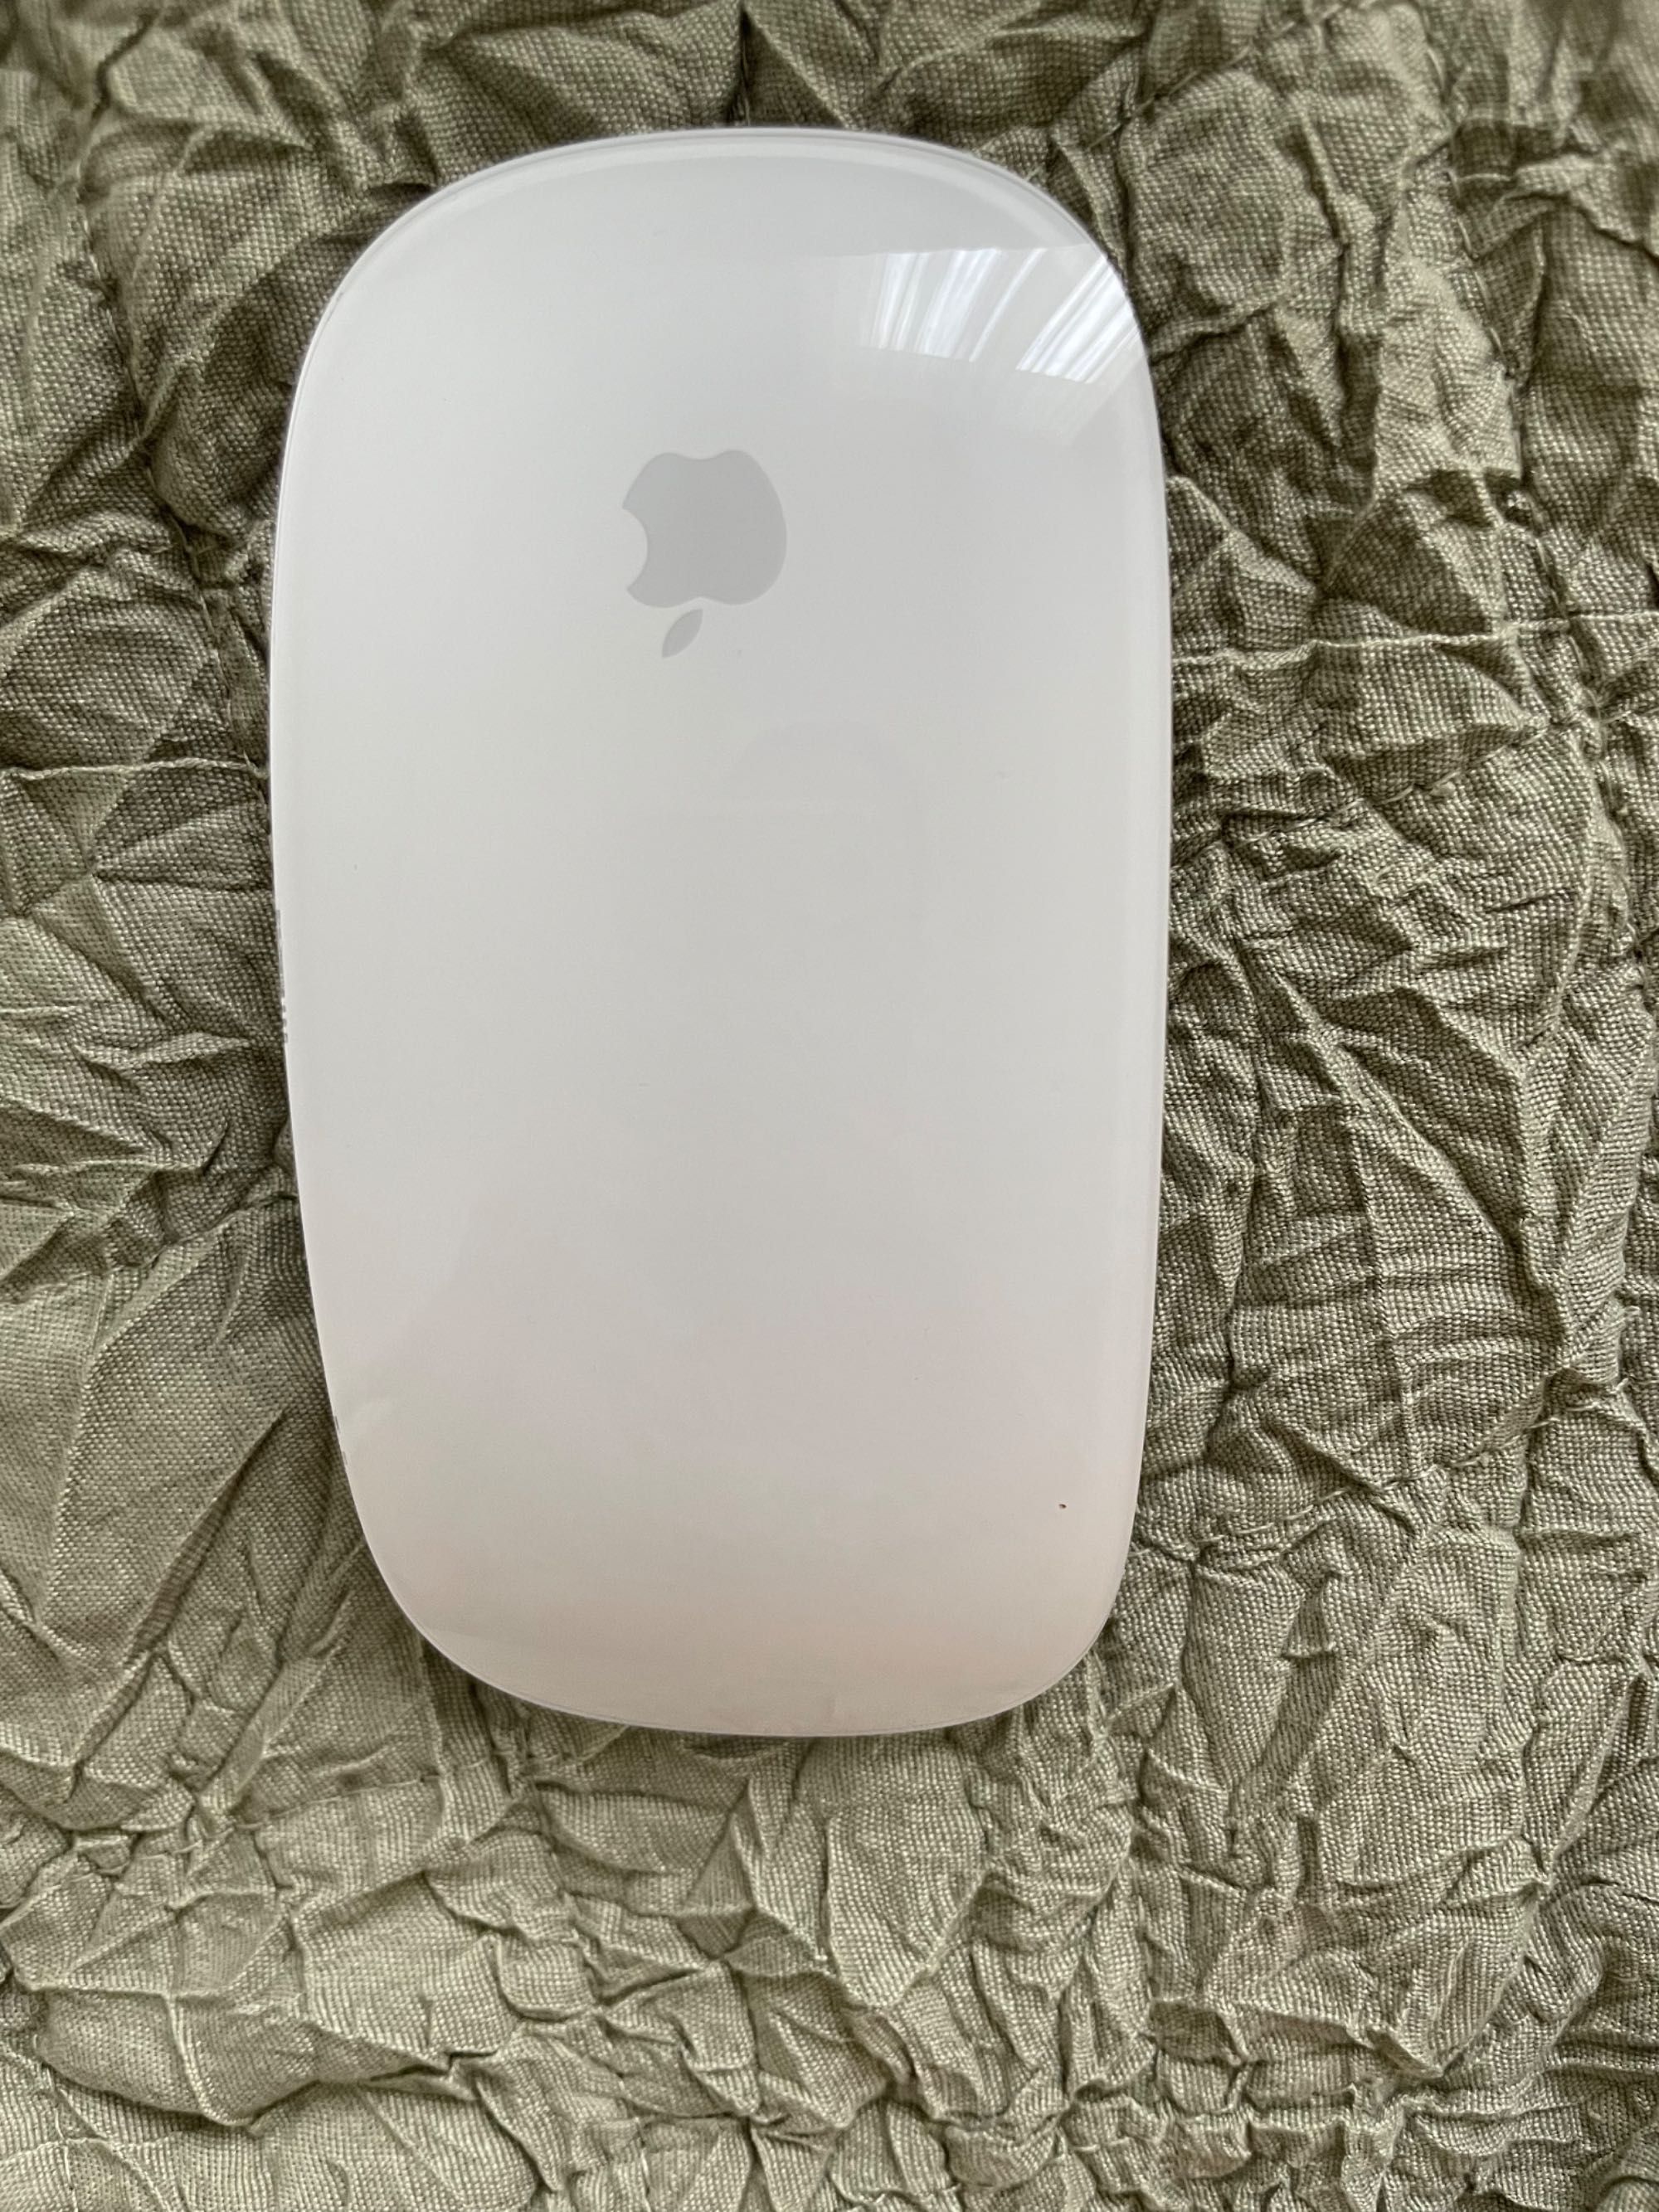 Magic Mouse 2 миш для ноутбуків Apple